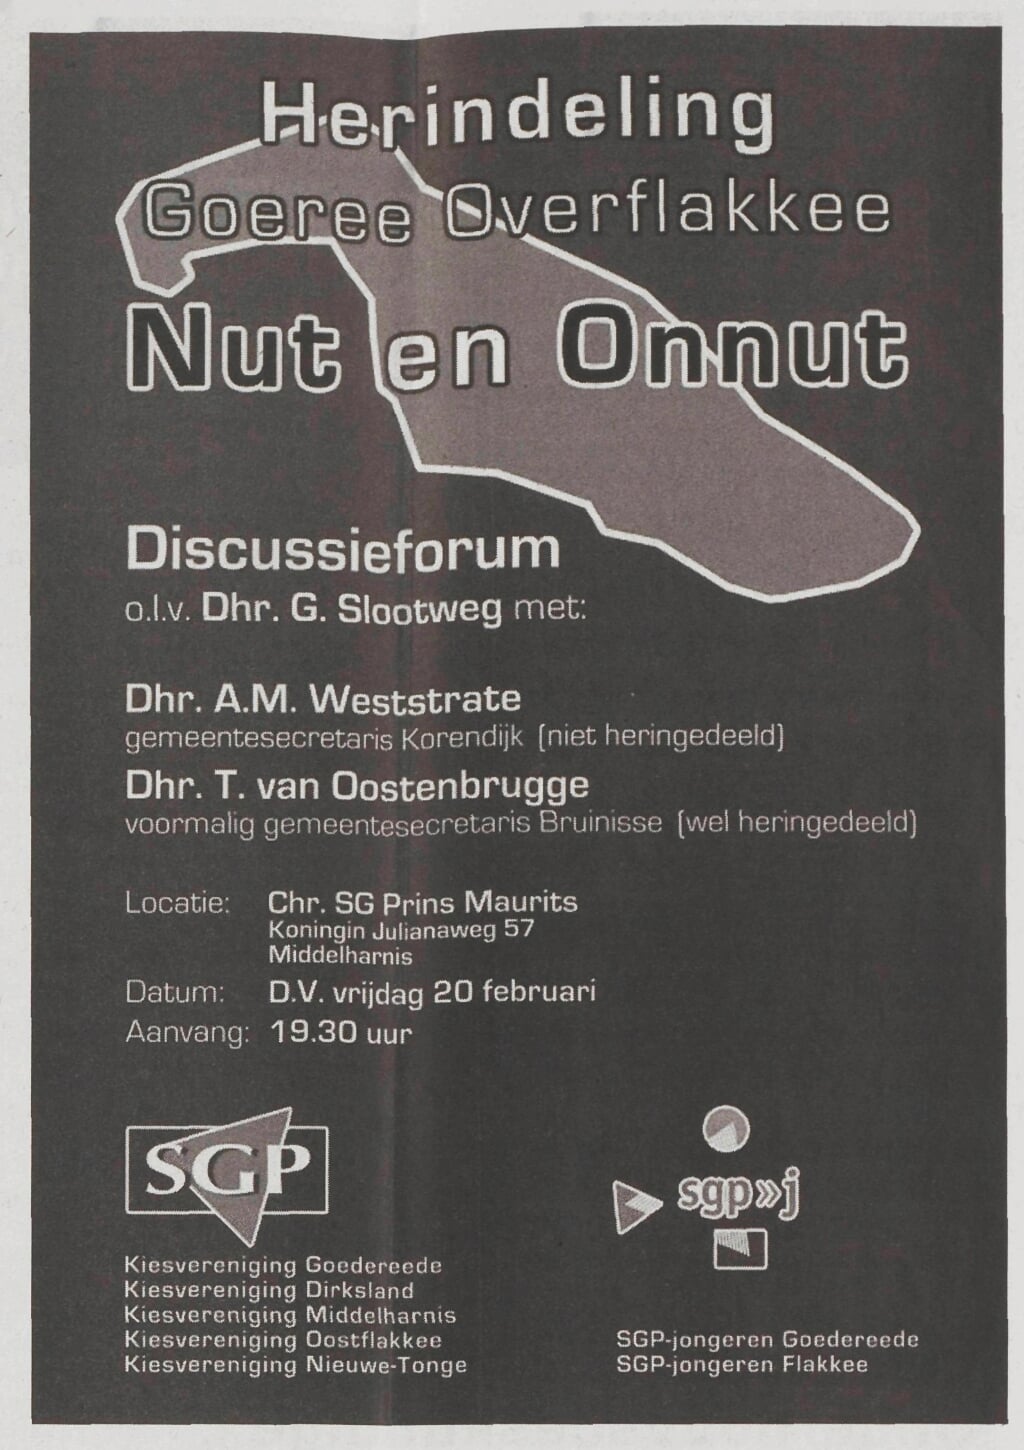 Een uitnodiging voor het bijwonen van een discussieforum. De organisatie was in handen van de SGP-kiesverenigingen in 2009.